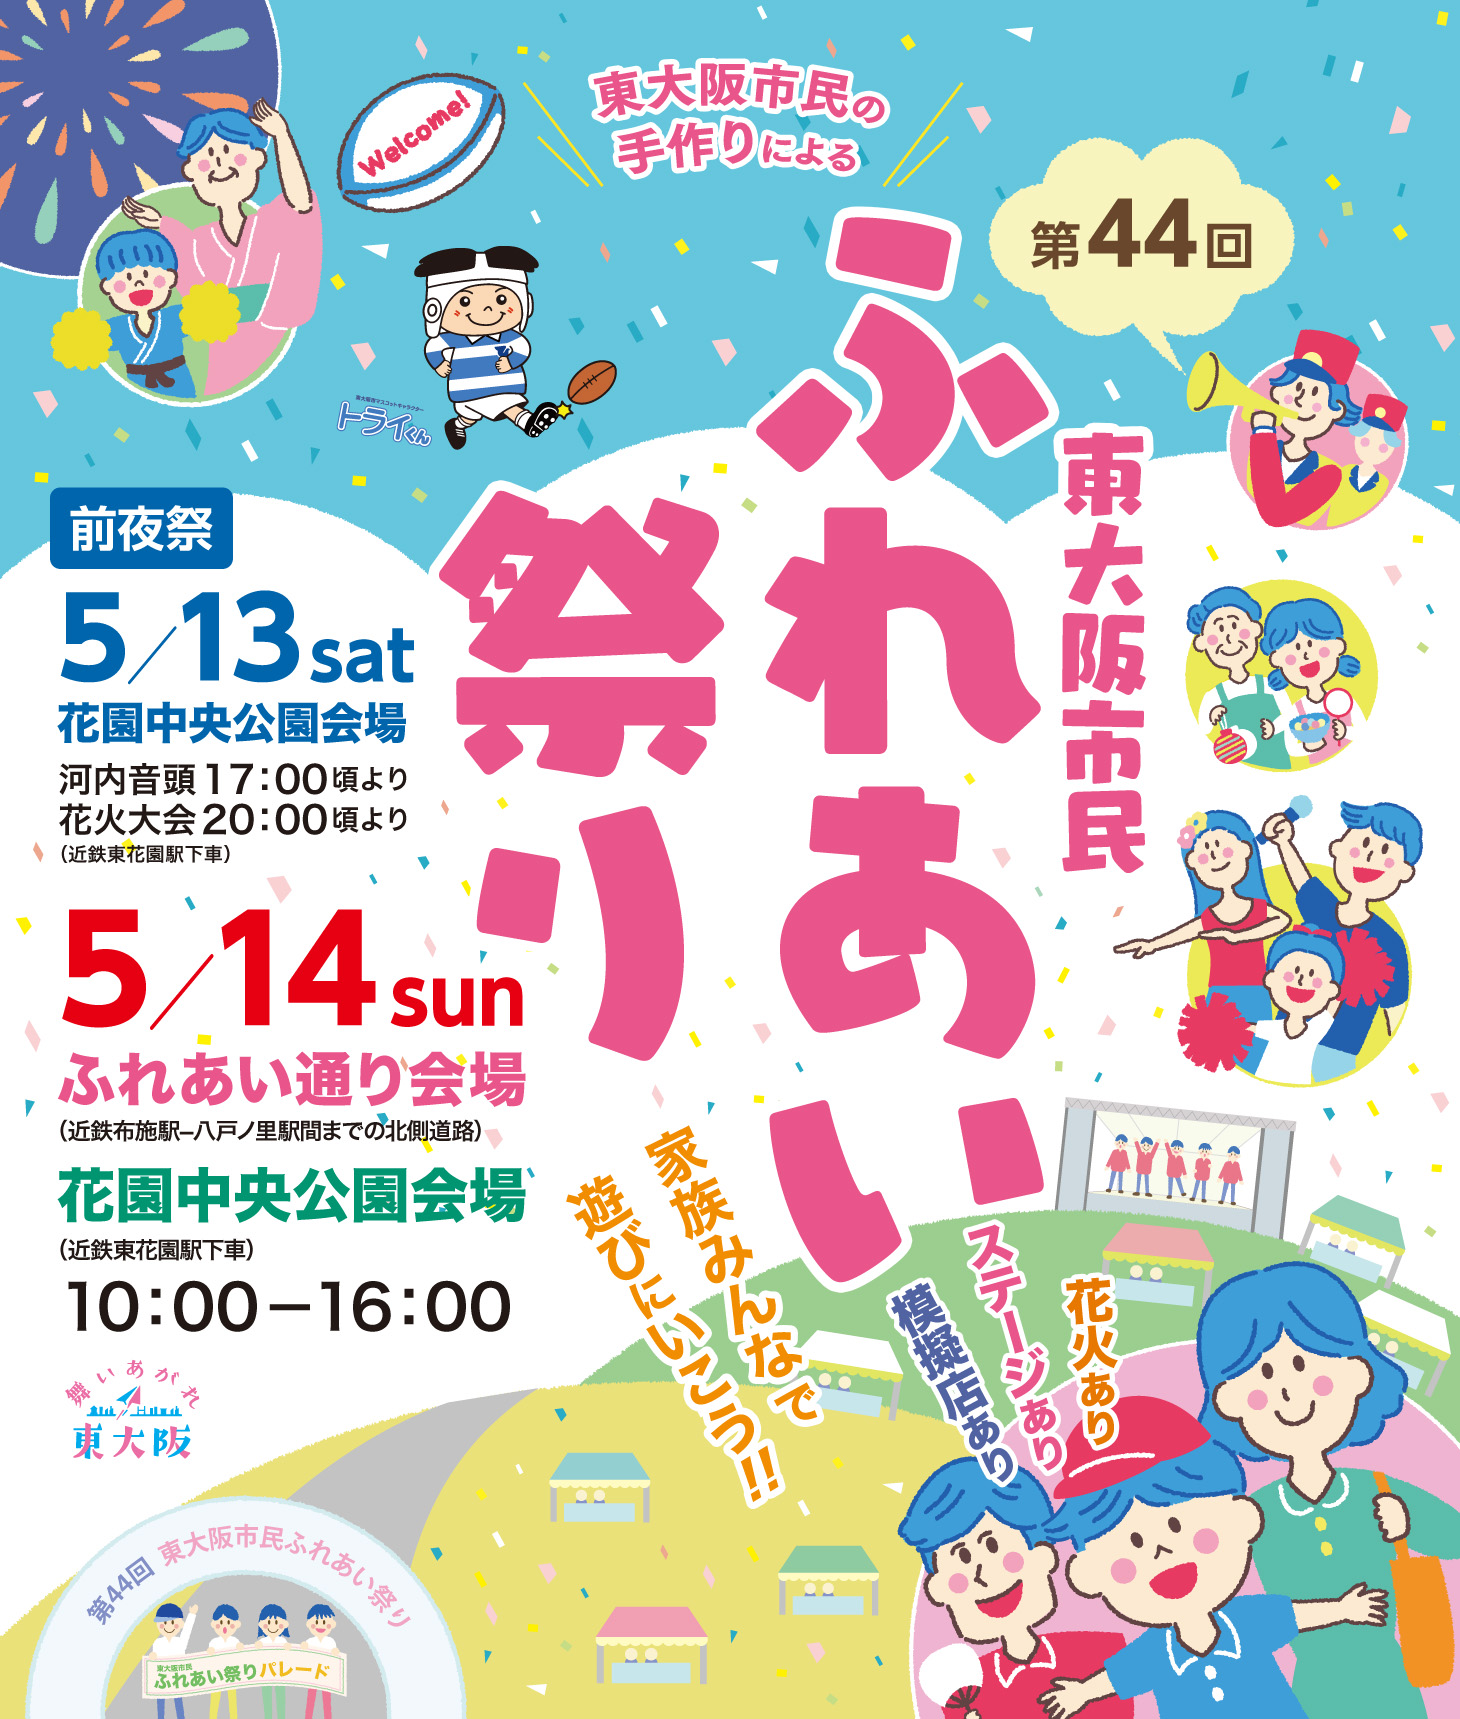 東大阪市民ふれあい祭りのポスター